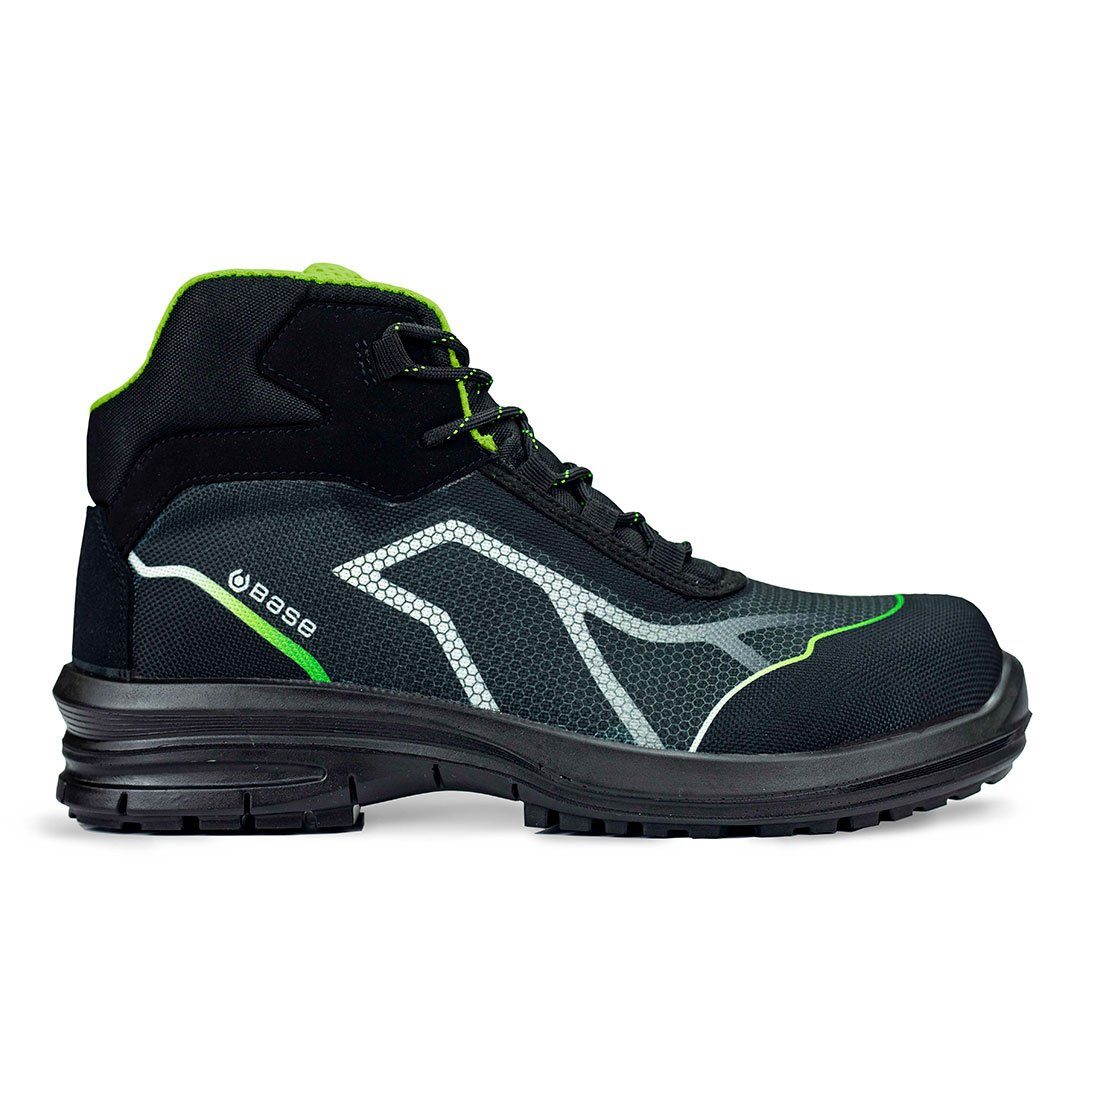 Base Footwear Sicherheitsschuhe OREN TOP S3 knöchelhoch schwarz/grün Sicherheitsschuh (Knöchelstiefel) metallfrei